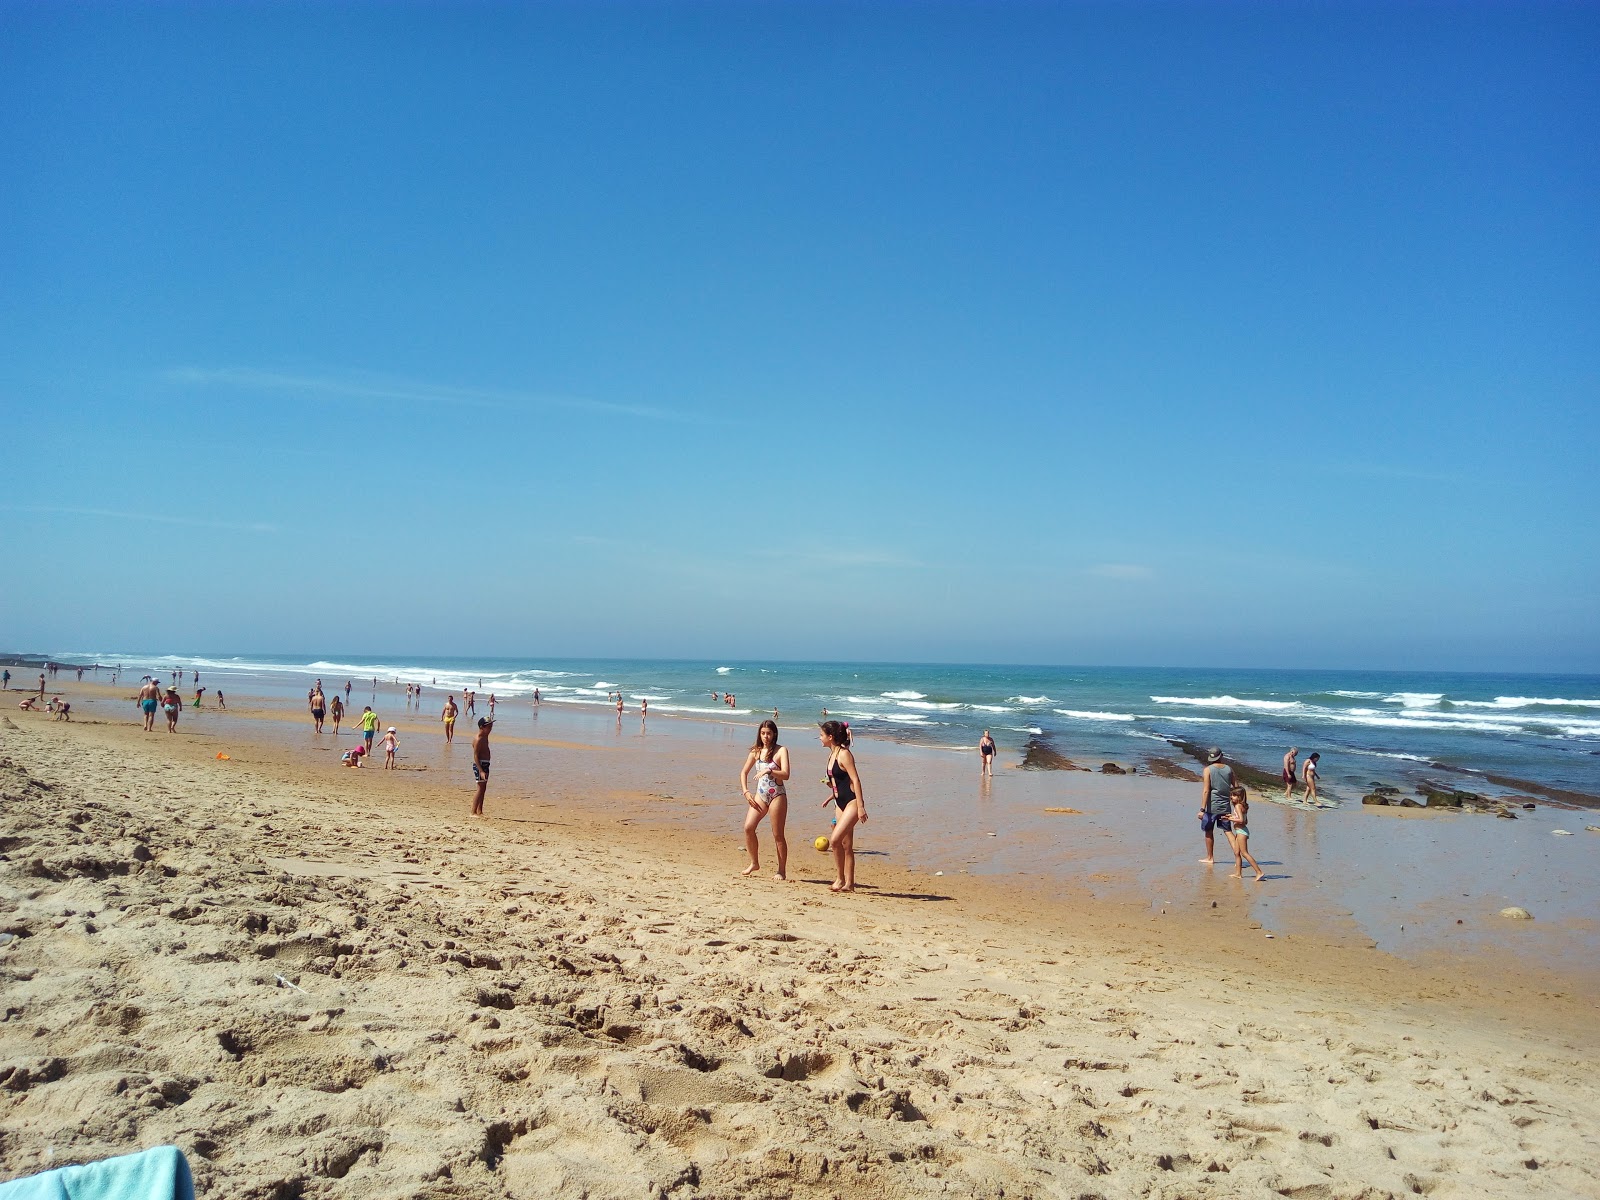 Praia do Magoito的照片 带有碧绿色纯水表面